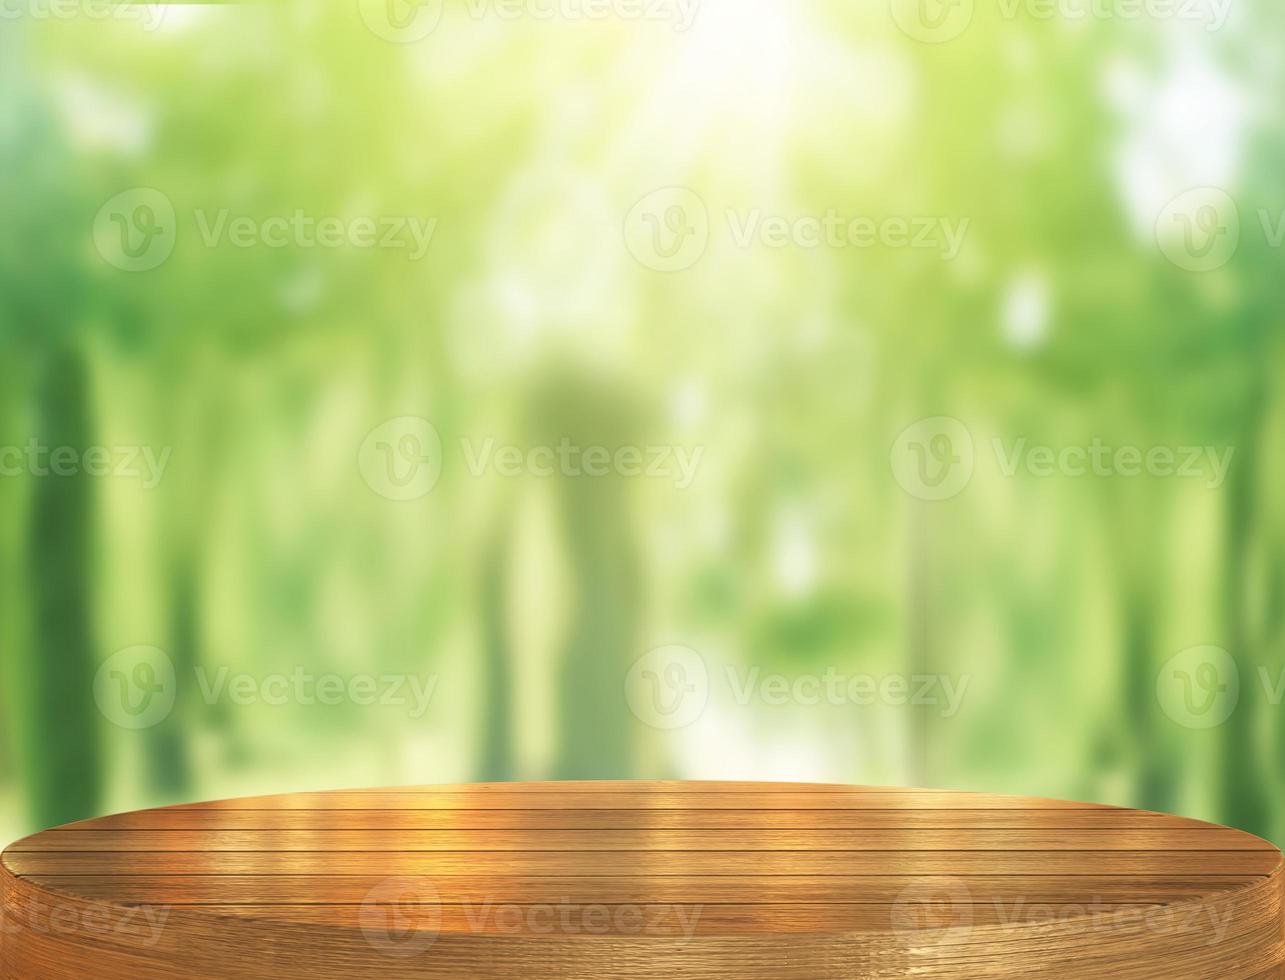 mesa de madera vacía y fondo verde borroso para plataforma o podio de exhibición de productos foto